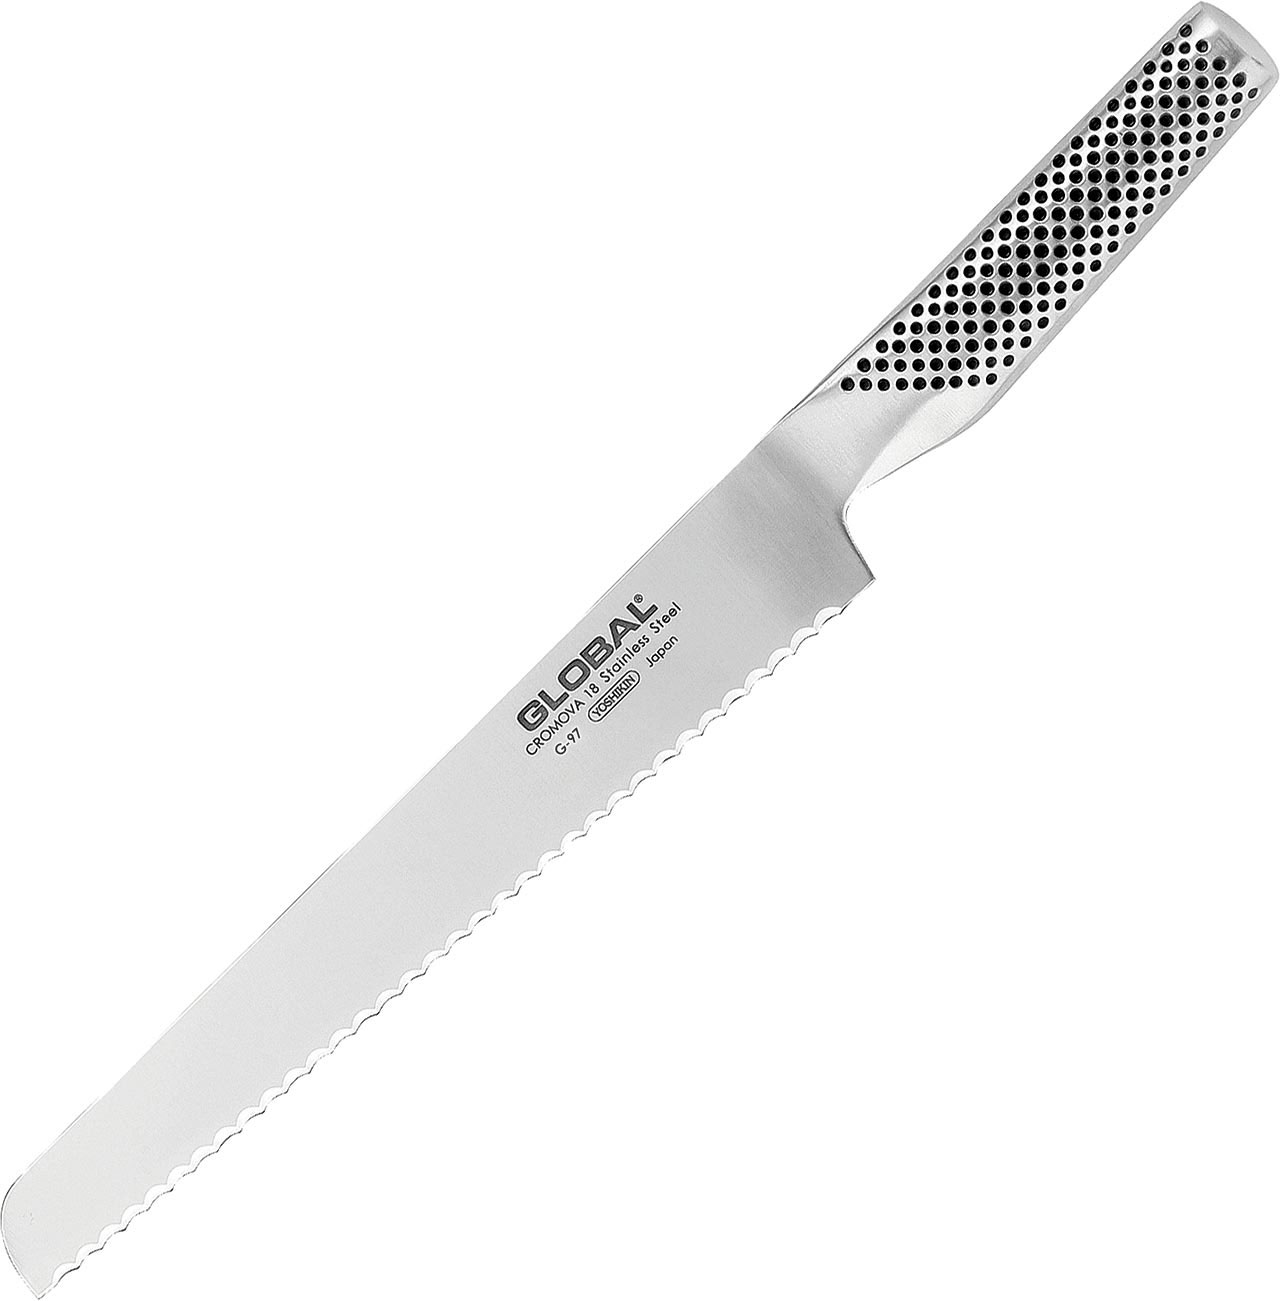 G-97 Bread Knife 20cm